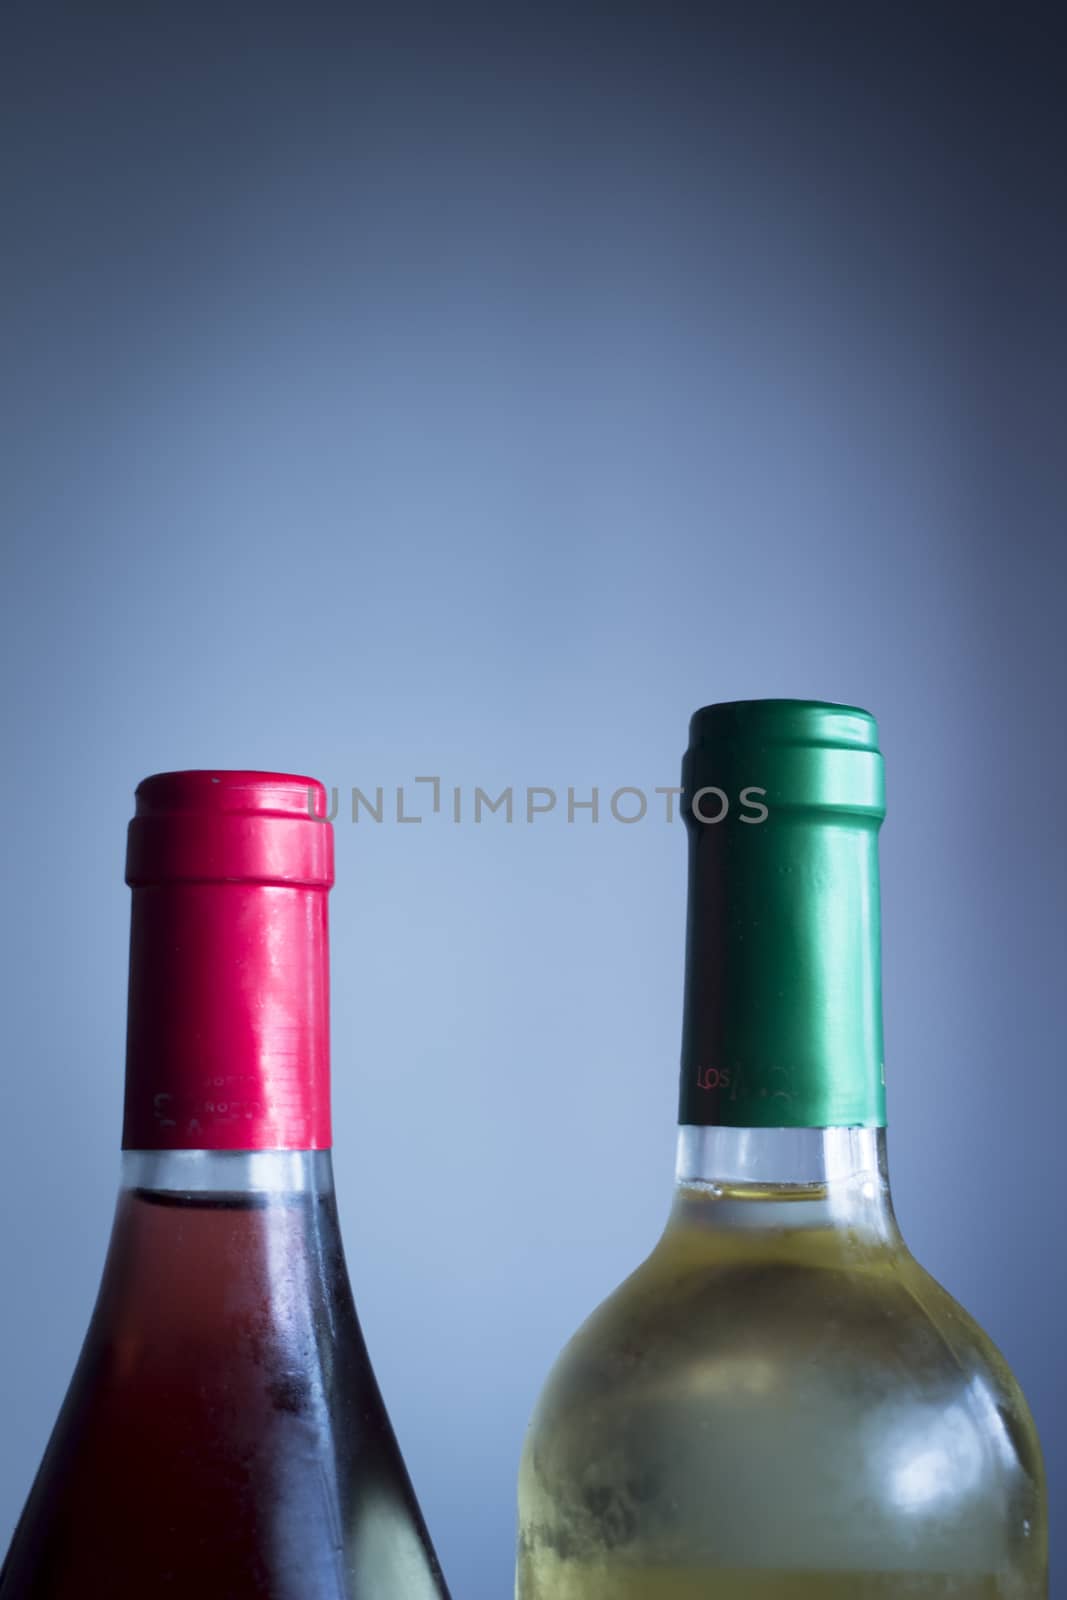 Rose and white wine bottles studio isolated by edwardolive